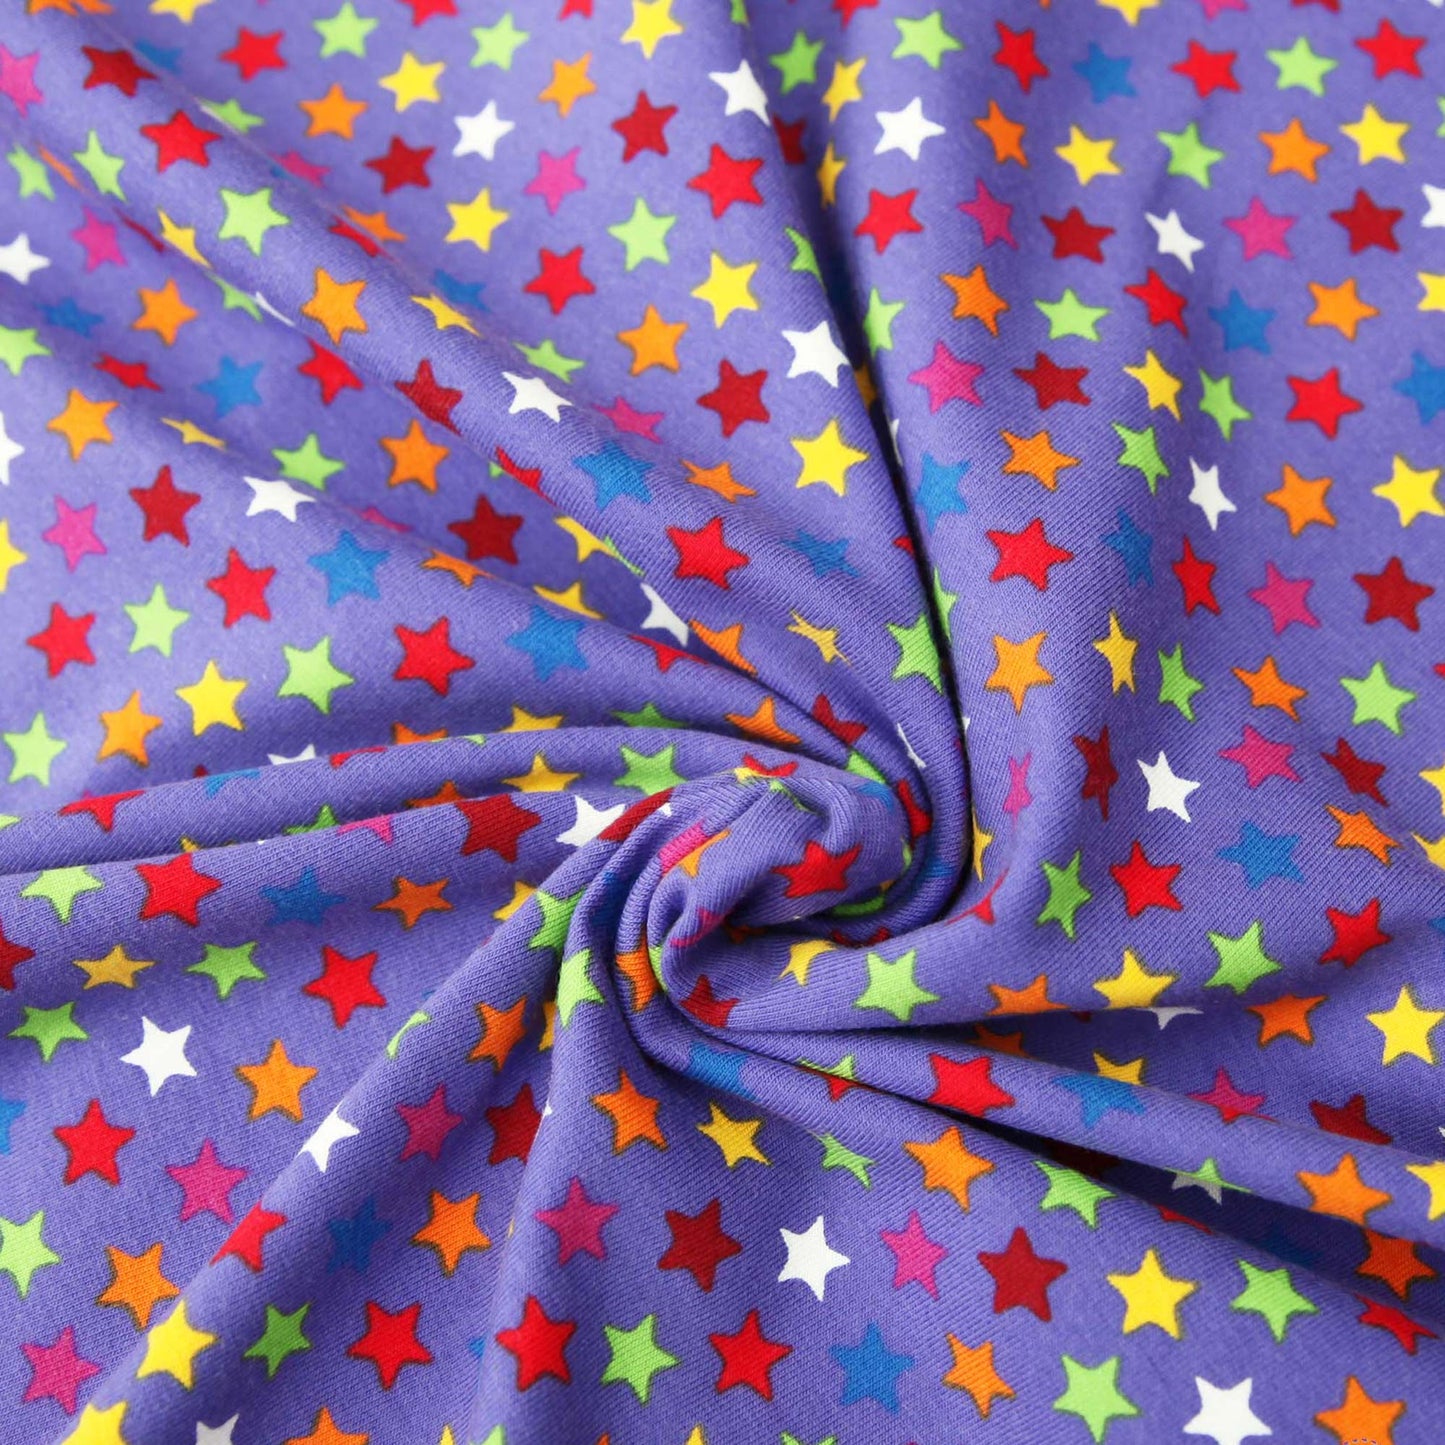 Baumwolljersey "kleine bunte Sterne auf violett" -  Jersey Stoff - Stoffe Kudellino